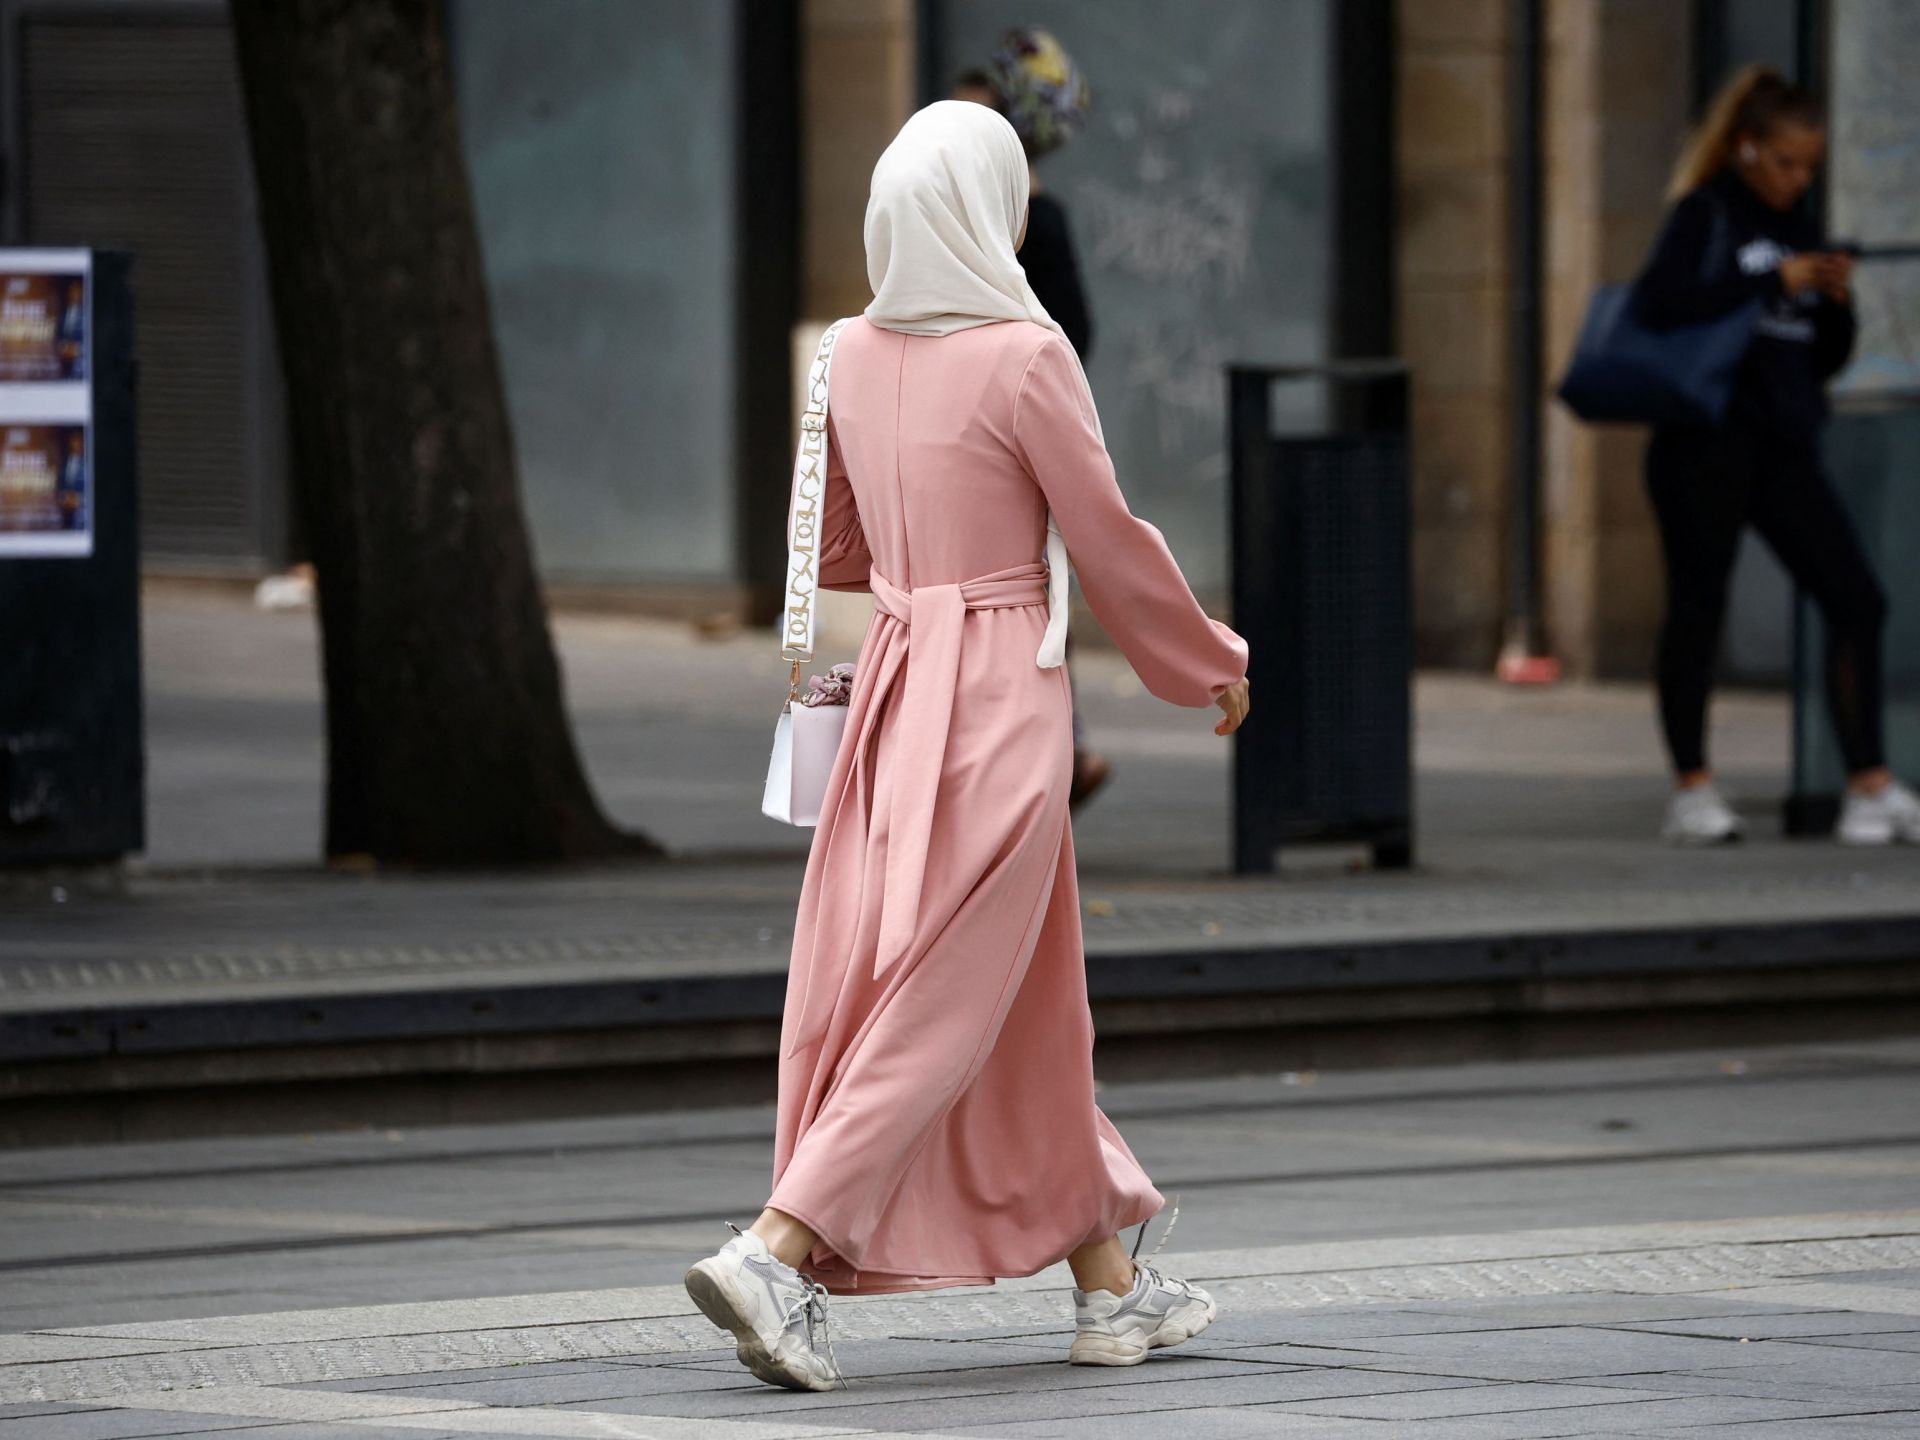 لوموند: المسلمون الفرنسيون وإكراهات الرحيل عن الوطن | سياسة – البوكس نيوز